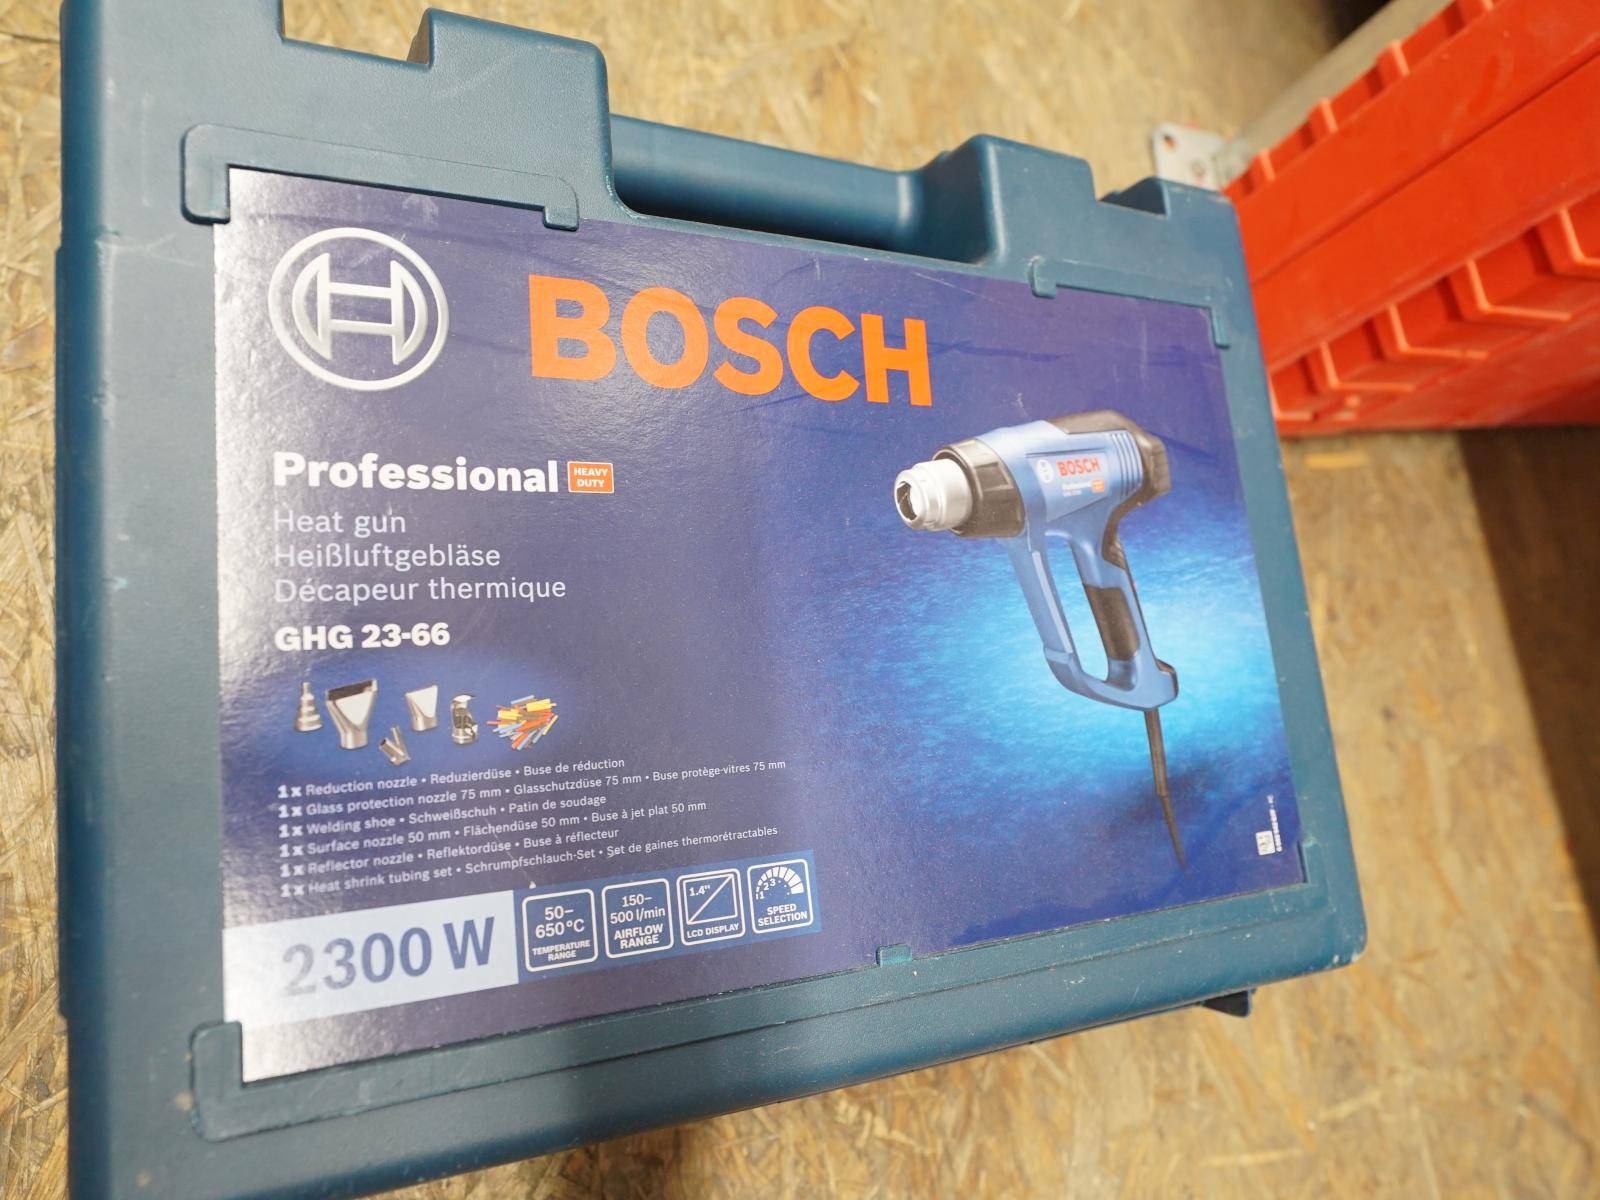 23-66 GST + Power 20.2.24 GHG Auction BOSCH E tool - 90